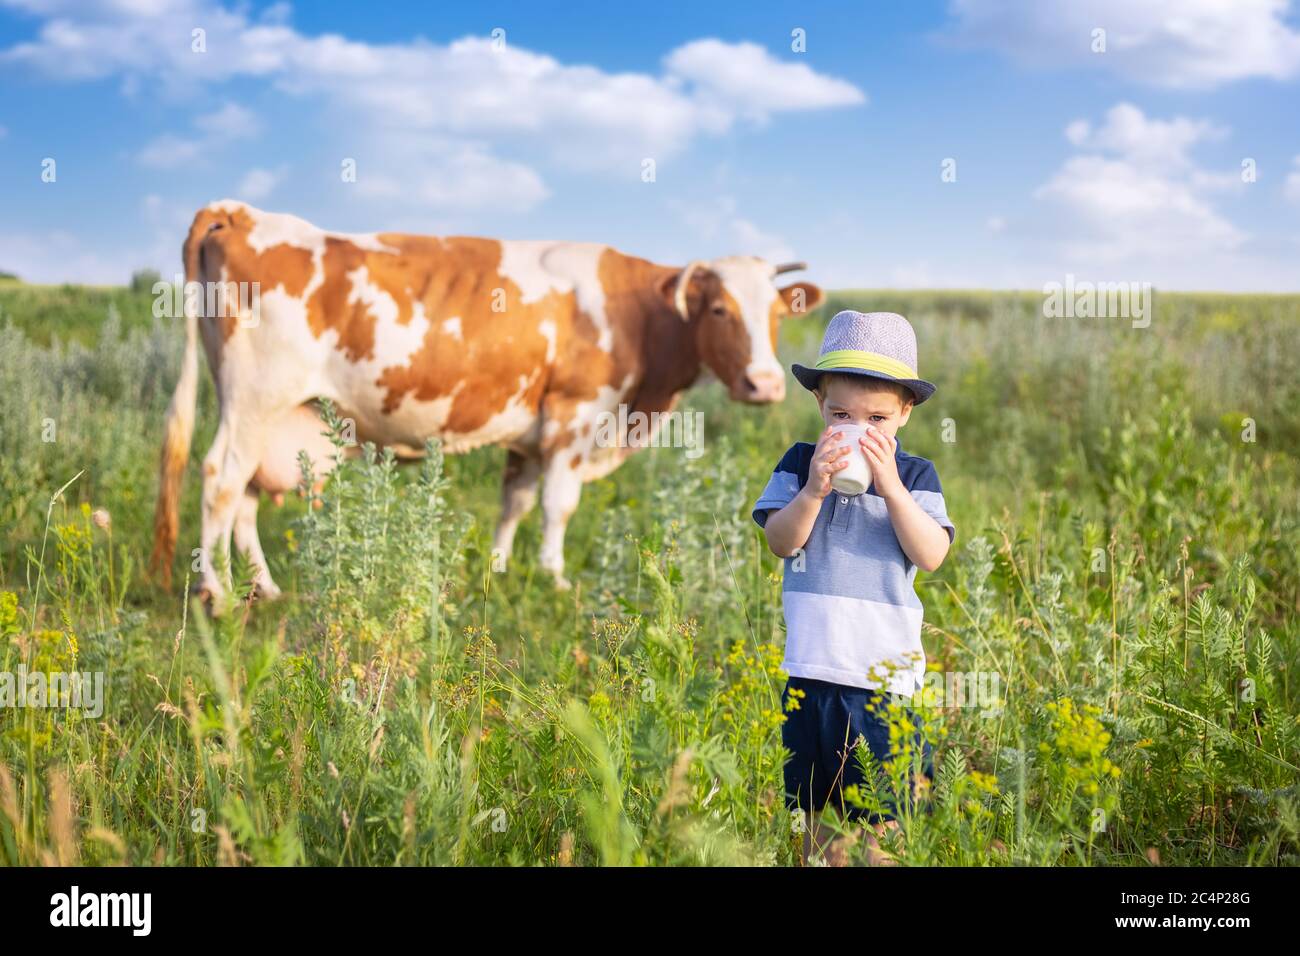 little boy drinking milk outdoors Stock Photo